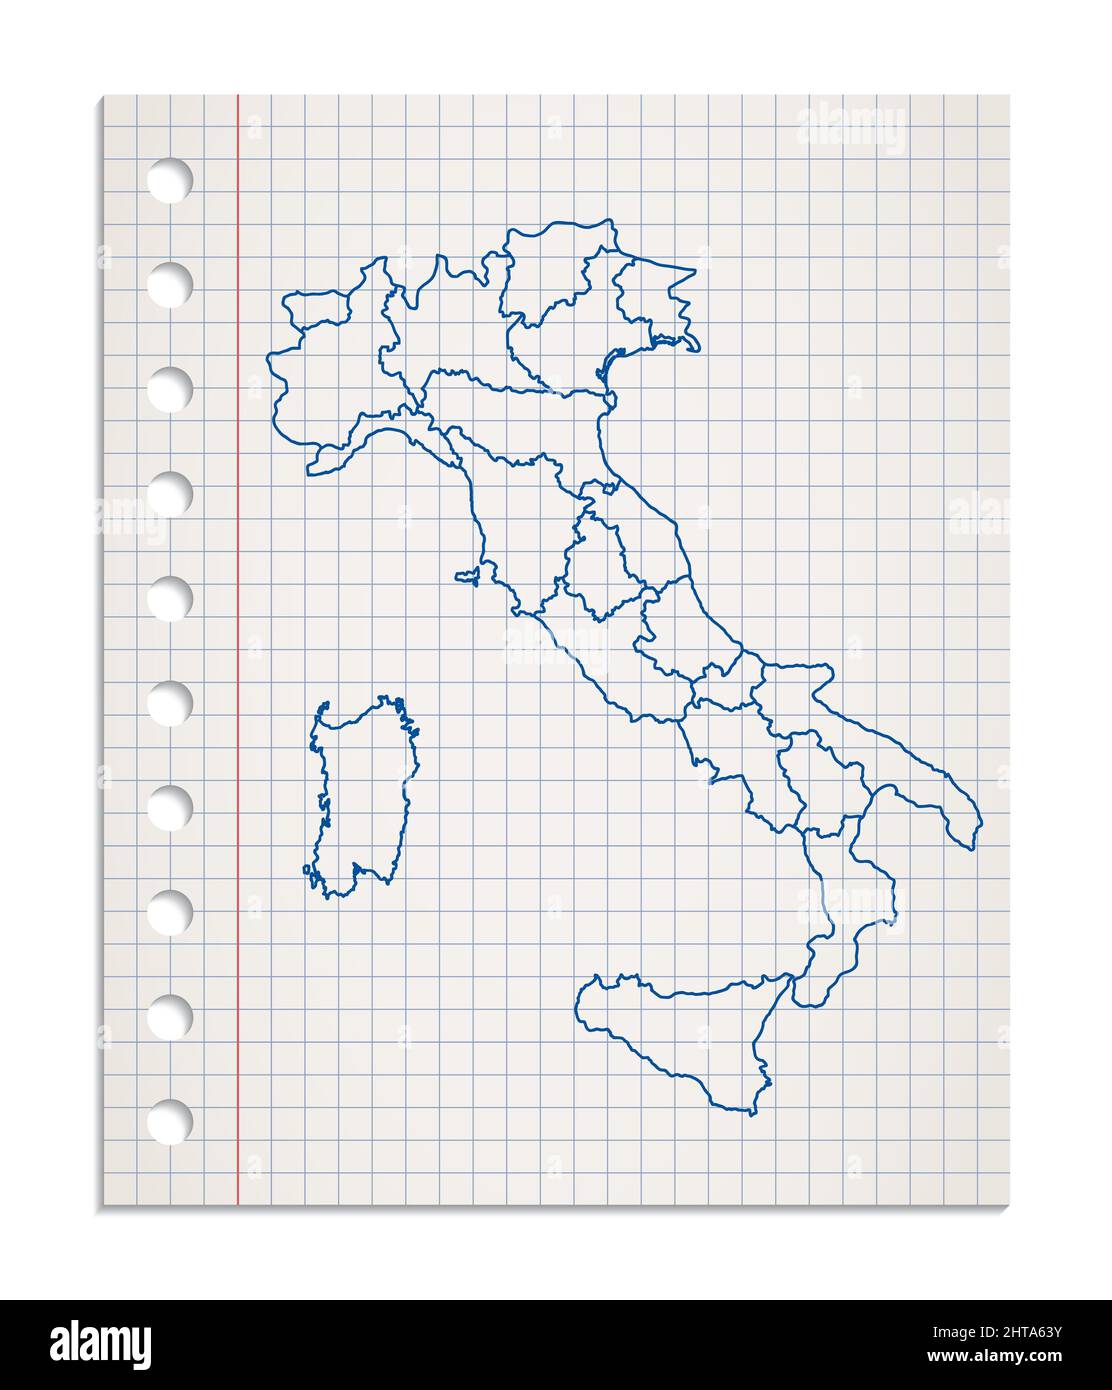 Carte d'Italie sur une feuille de papier au carré réaliste déchirée d'un bloc, vierge Banque D'Images